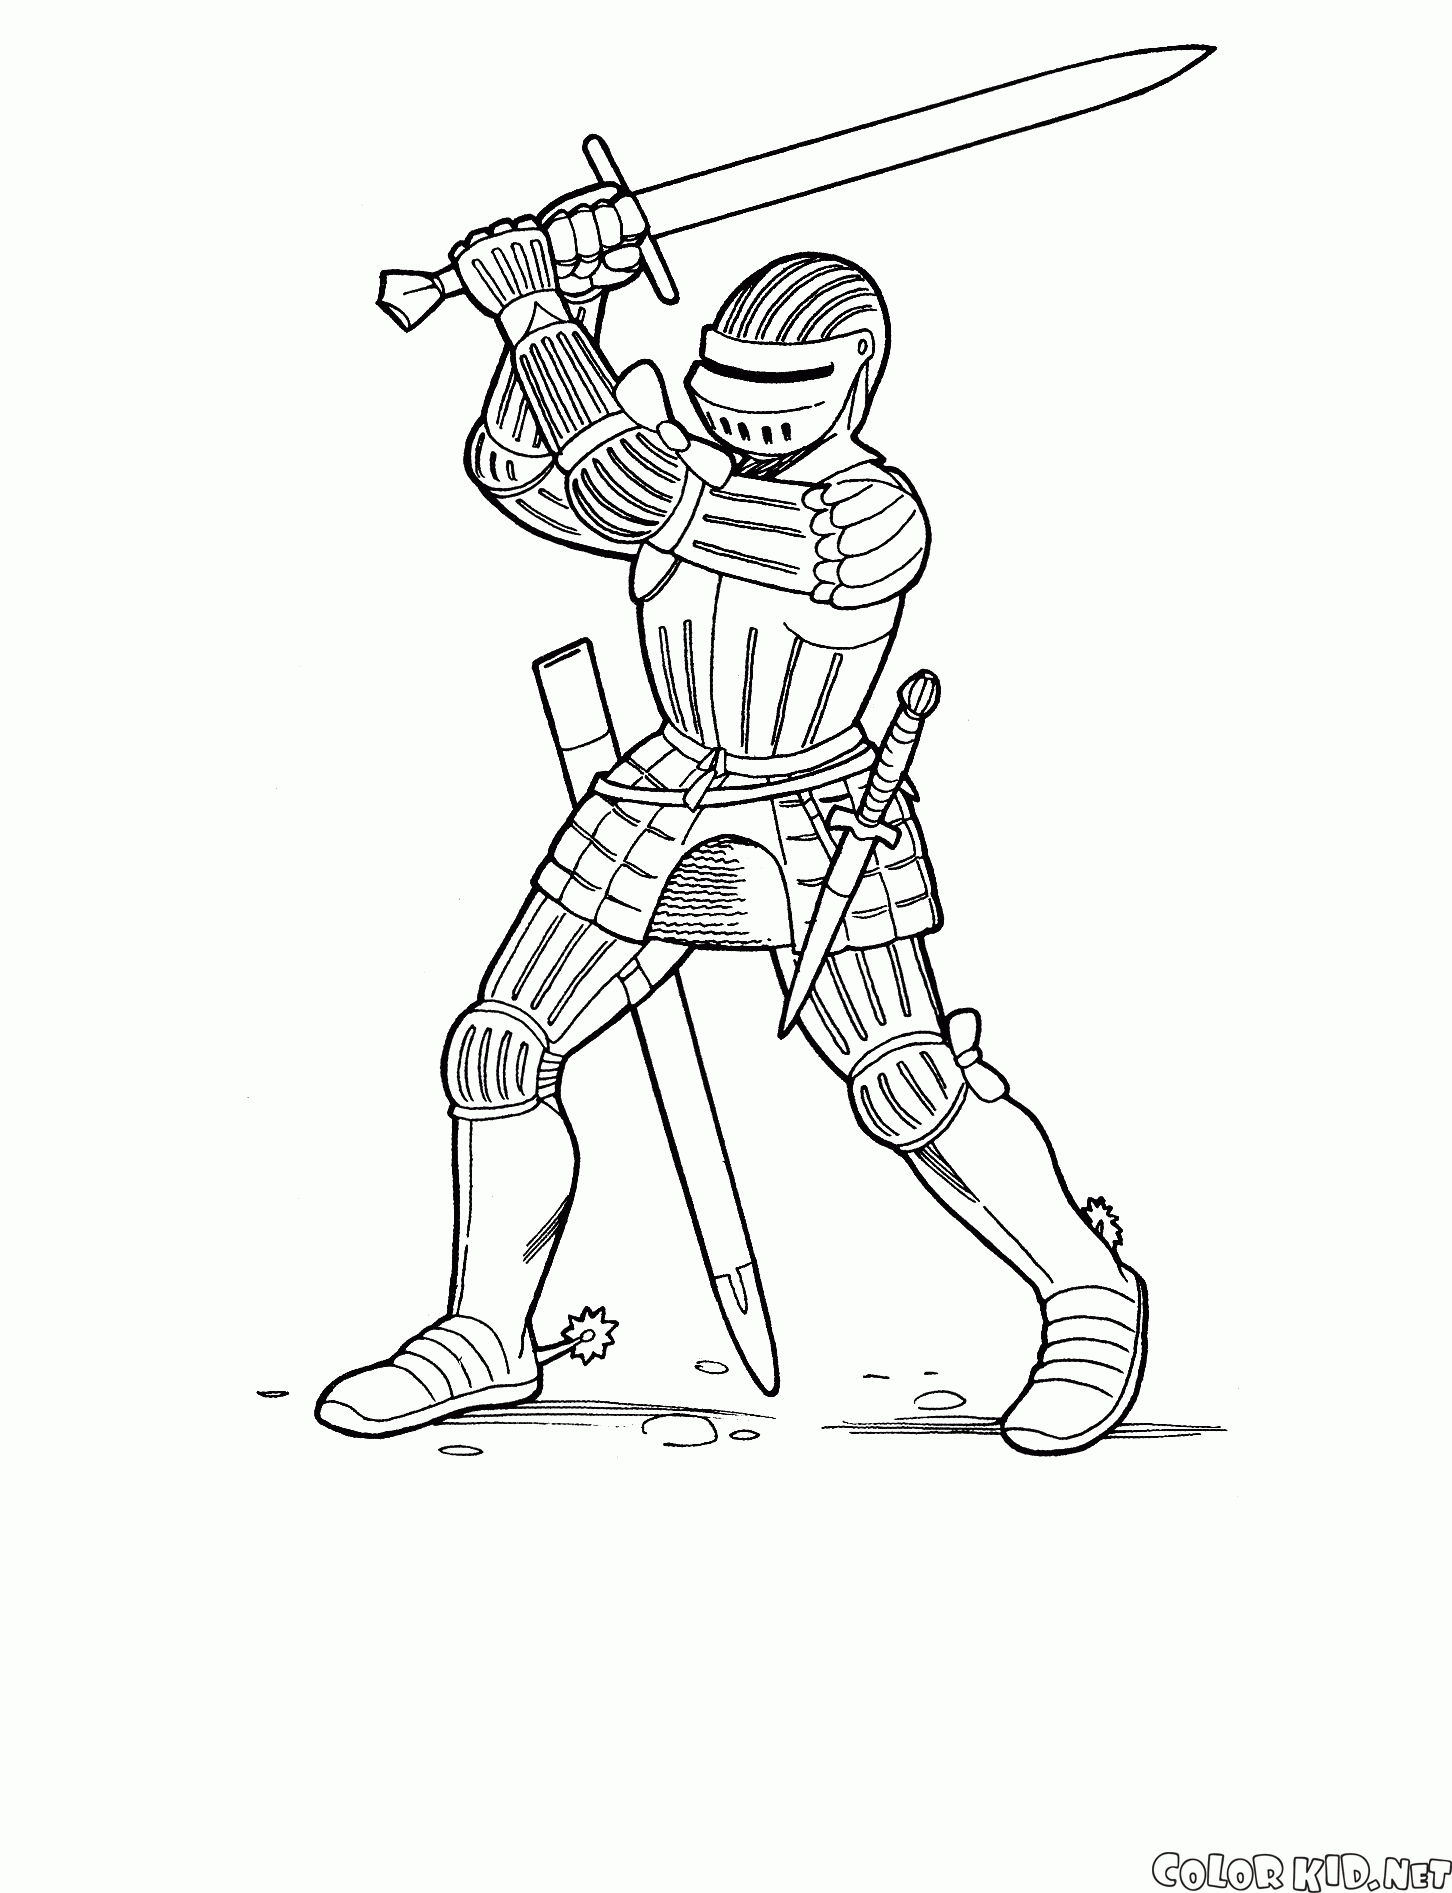 Cavaleiro com uma espada de duas mãos